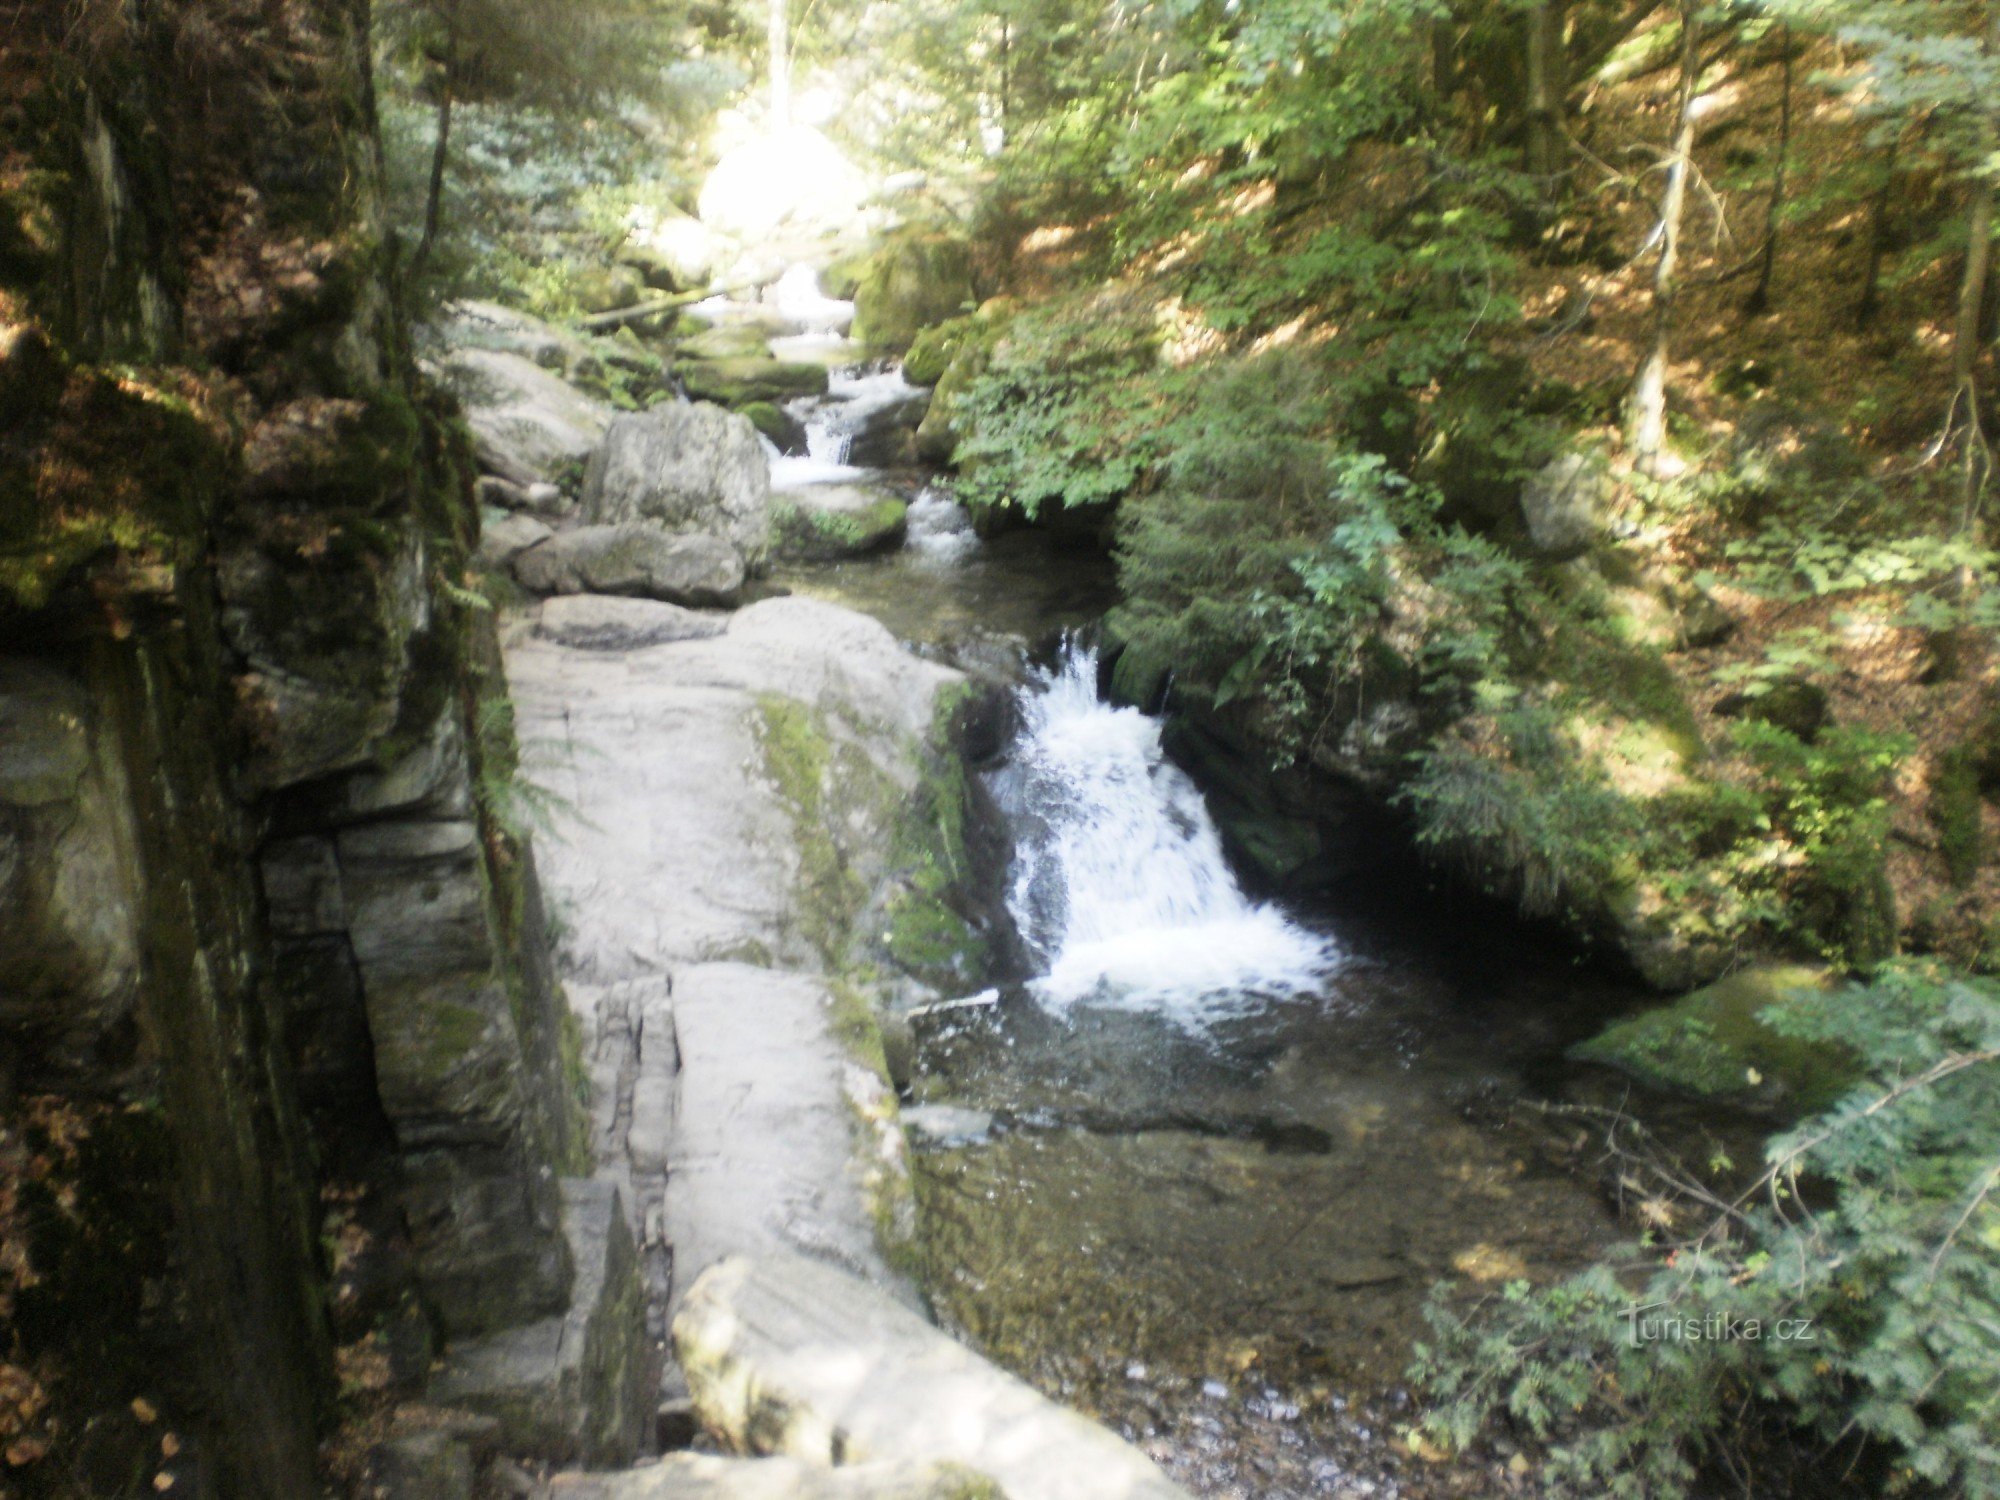 From Dlouhá Loučka through the waterfalls to Rýmařov